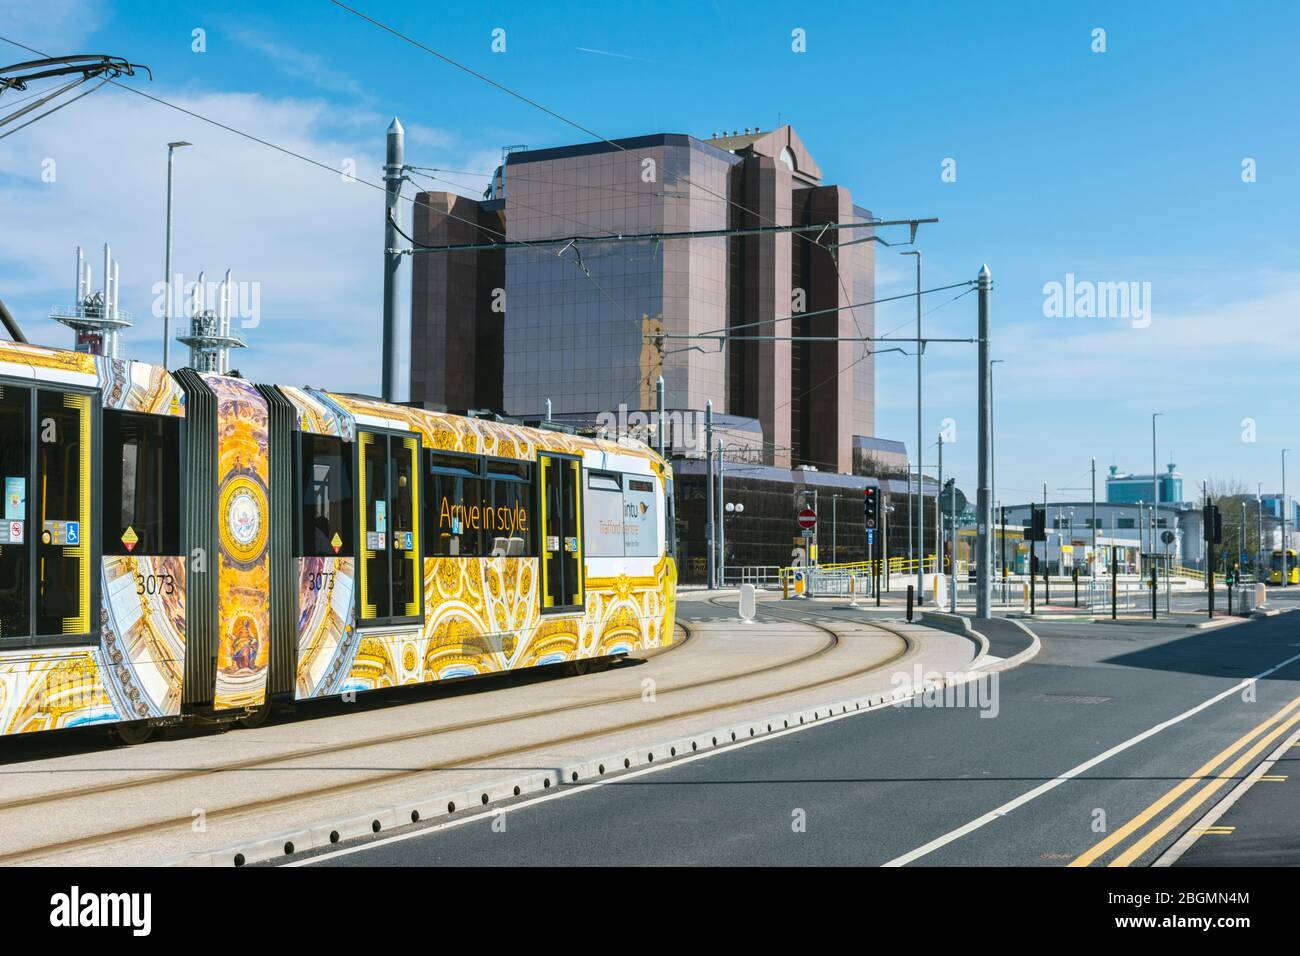 Le tramway Metrolink qui s'approche du bâtiment Quay West le jour de l'ouverture de la ligne Trafford Park. Trafford Wharf Rd., Trafford, Manchester, Royaume-Uni Banque D'Images